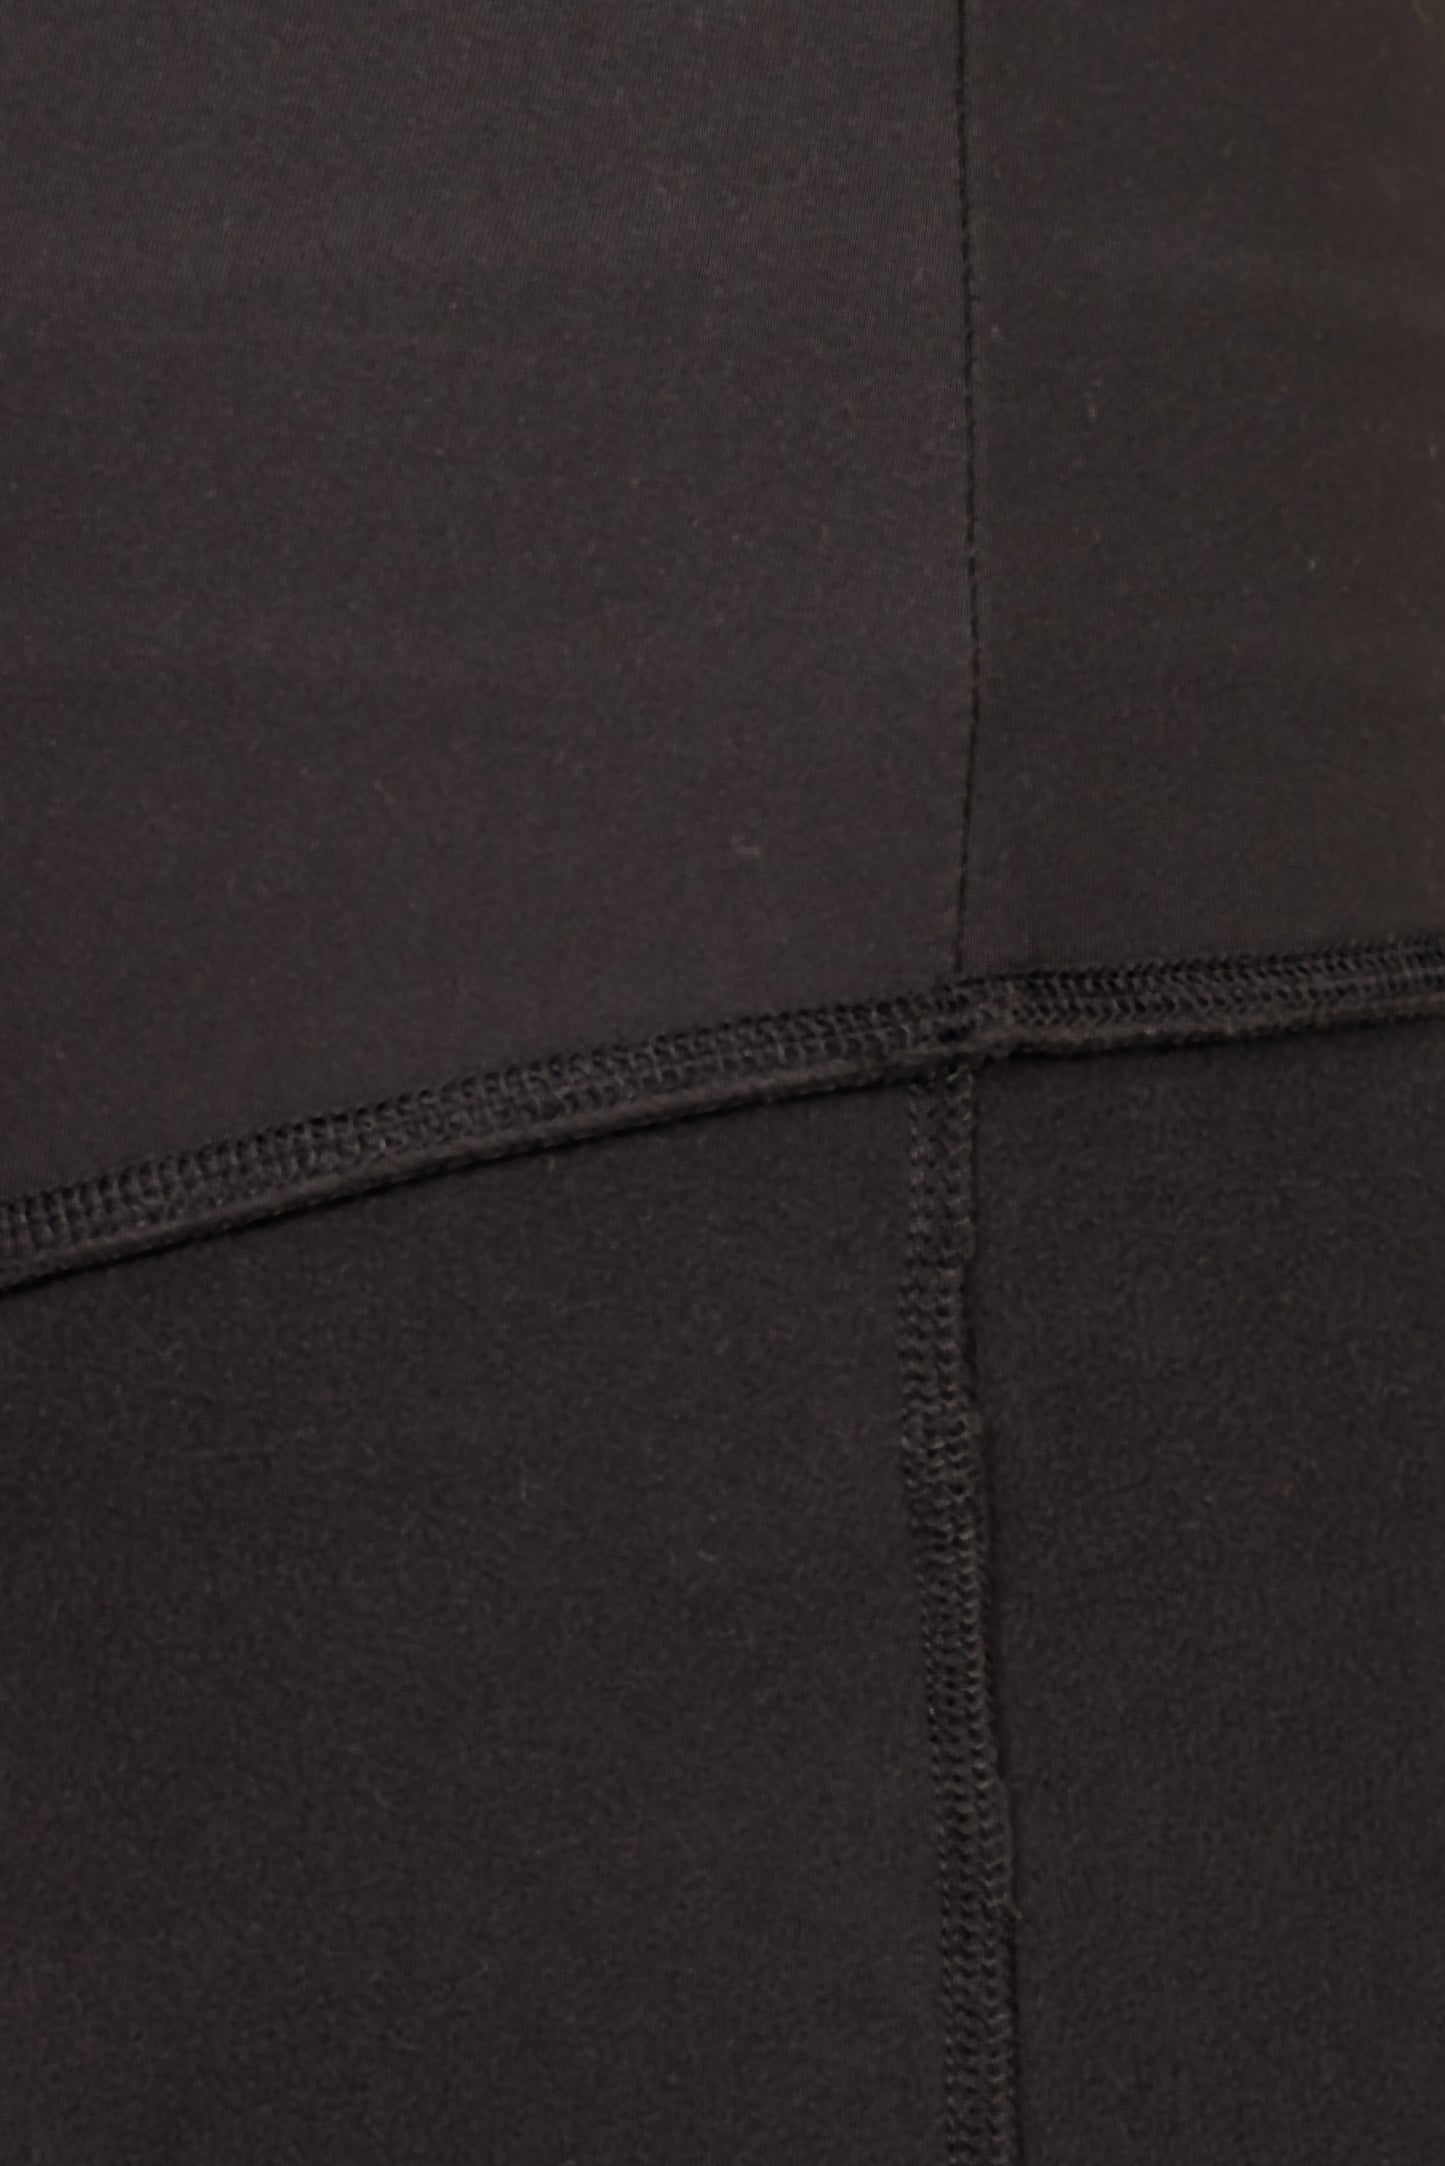 Fleece Lined Black 2 Pocket Full Leggings